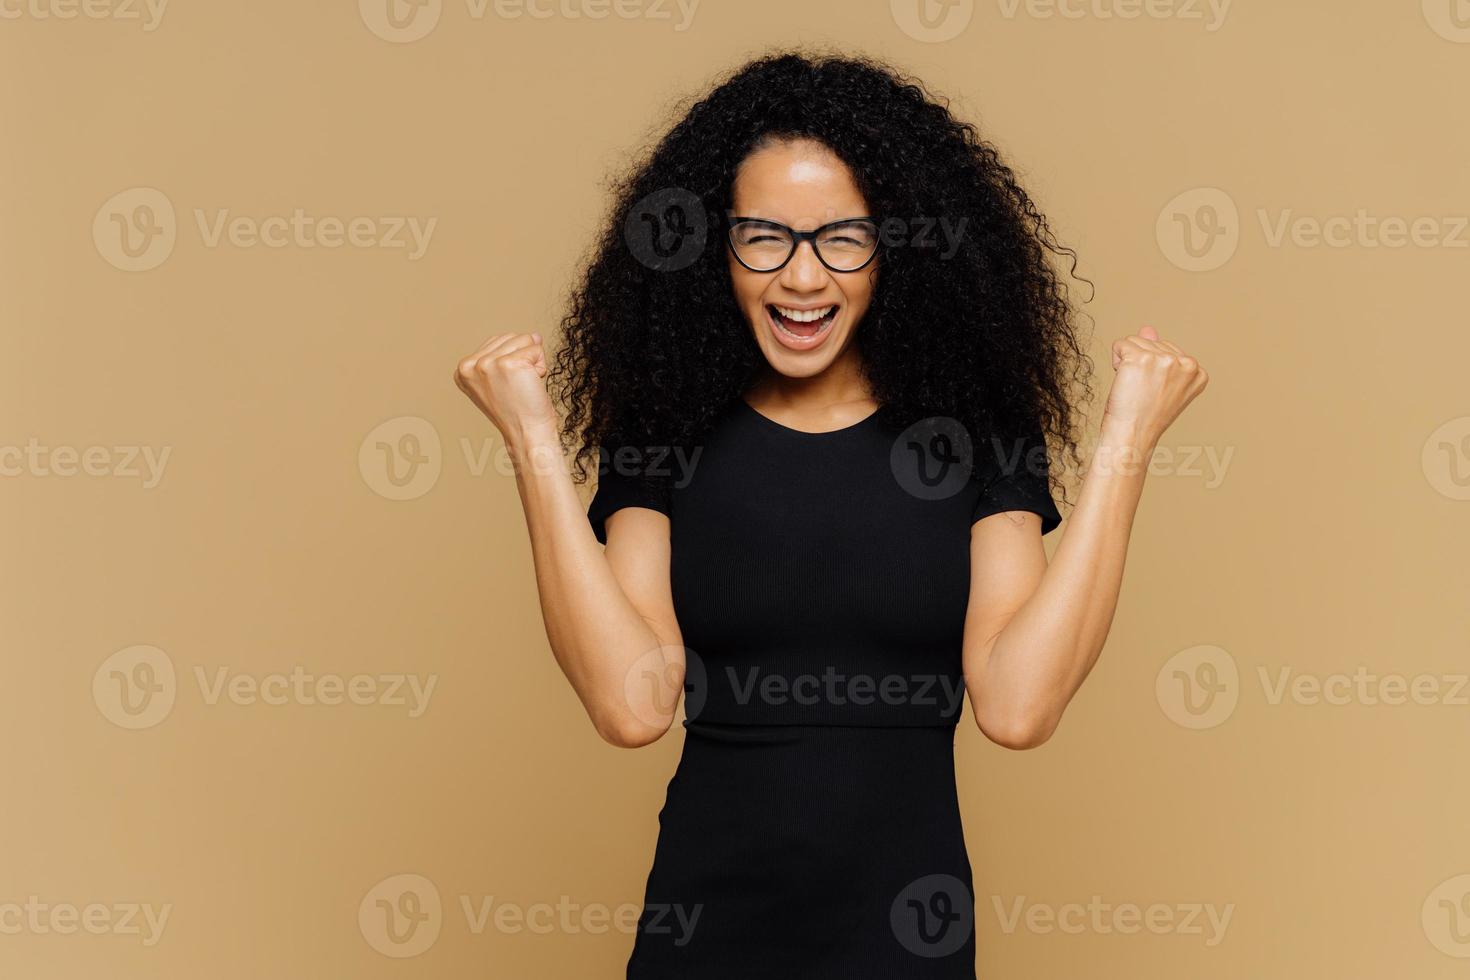 studioaufnahme einer überglücklichen jubelnden frau mit lockigem haar, hebt geballte fäuste, feiert erfolg und triumph, gekleidet in lässiges schwarzes t-shirt, brille, steht an brauner wand mit leerem raum foto